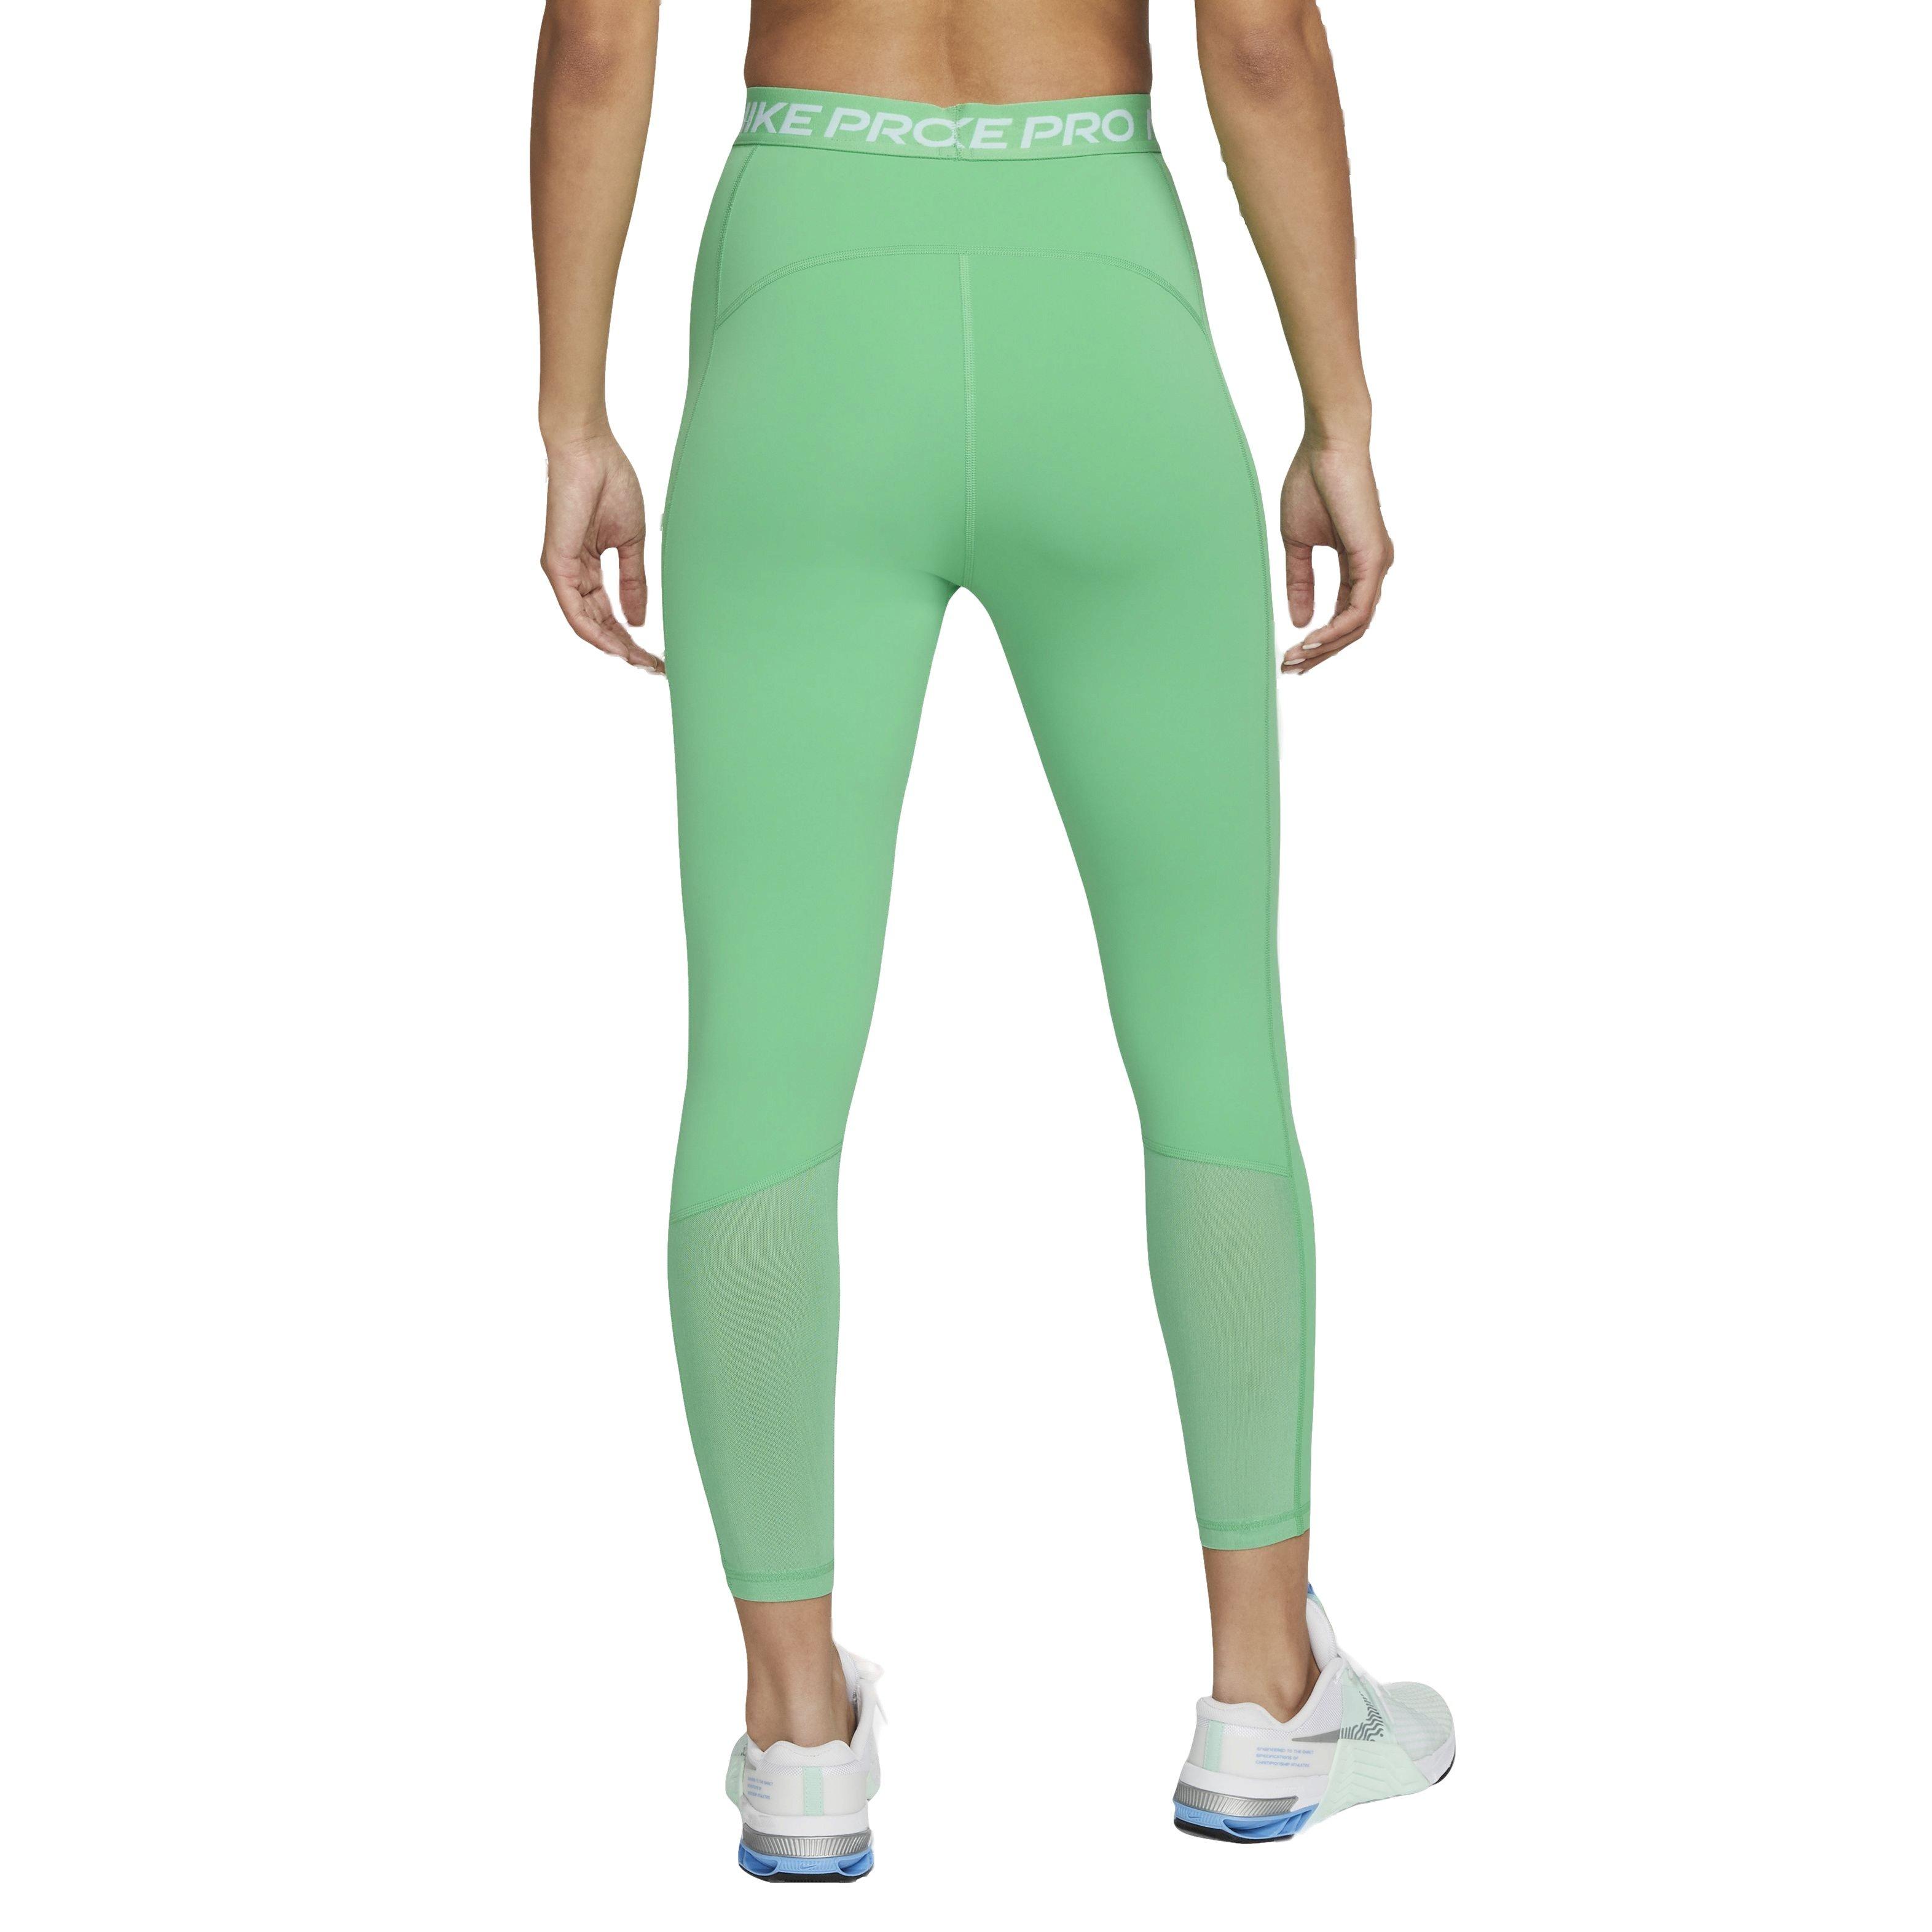 Nike Women's 365 High-Waisted 7/8 Mesh Panel Leggings - Green